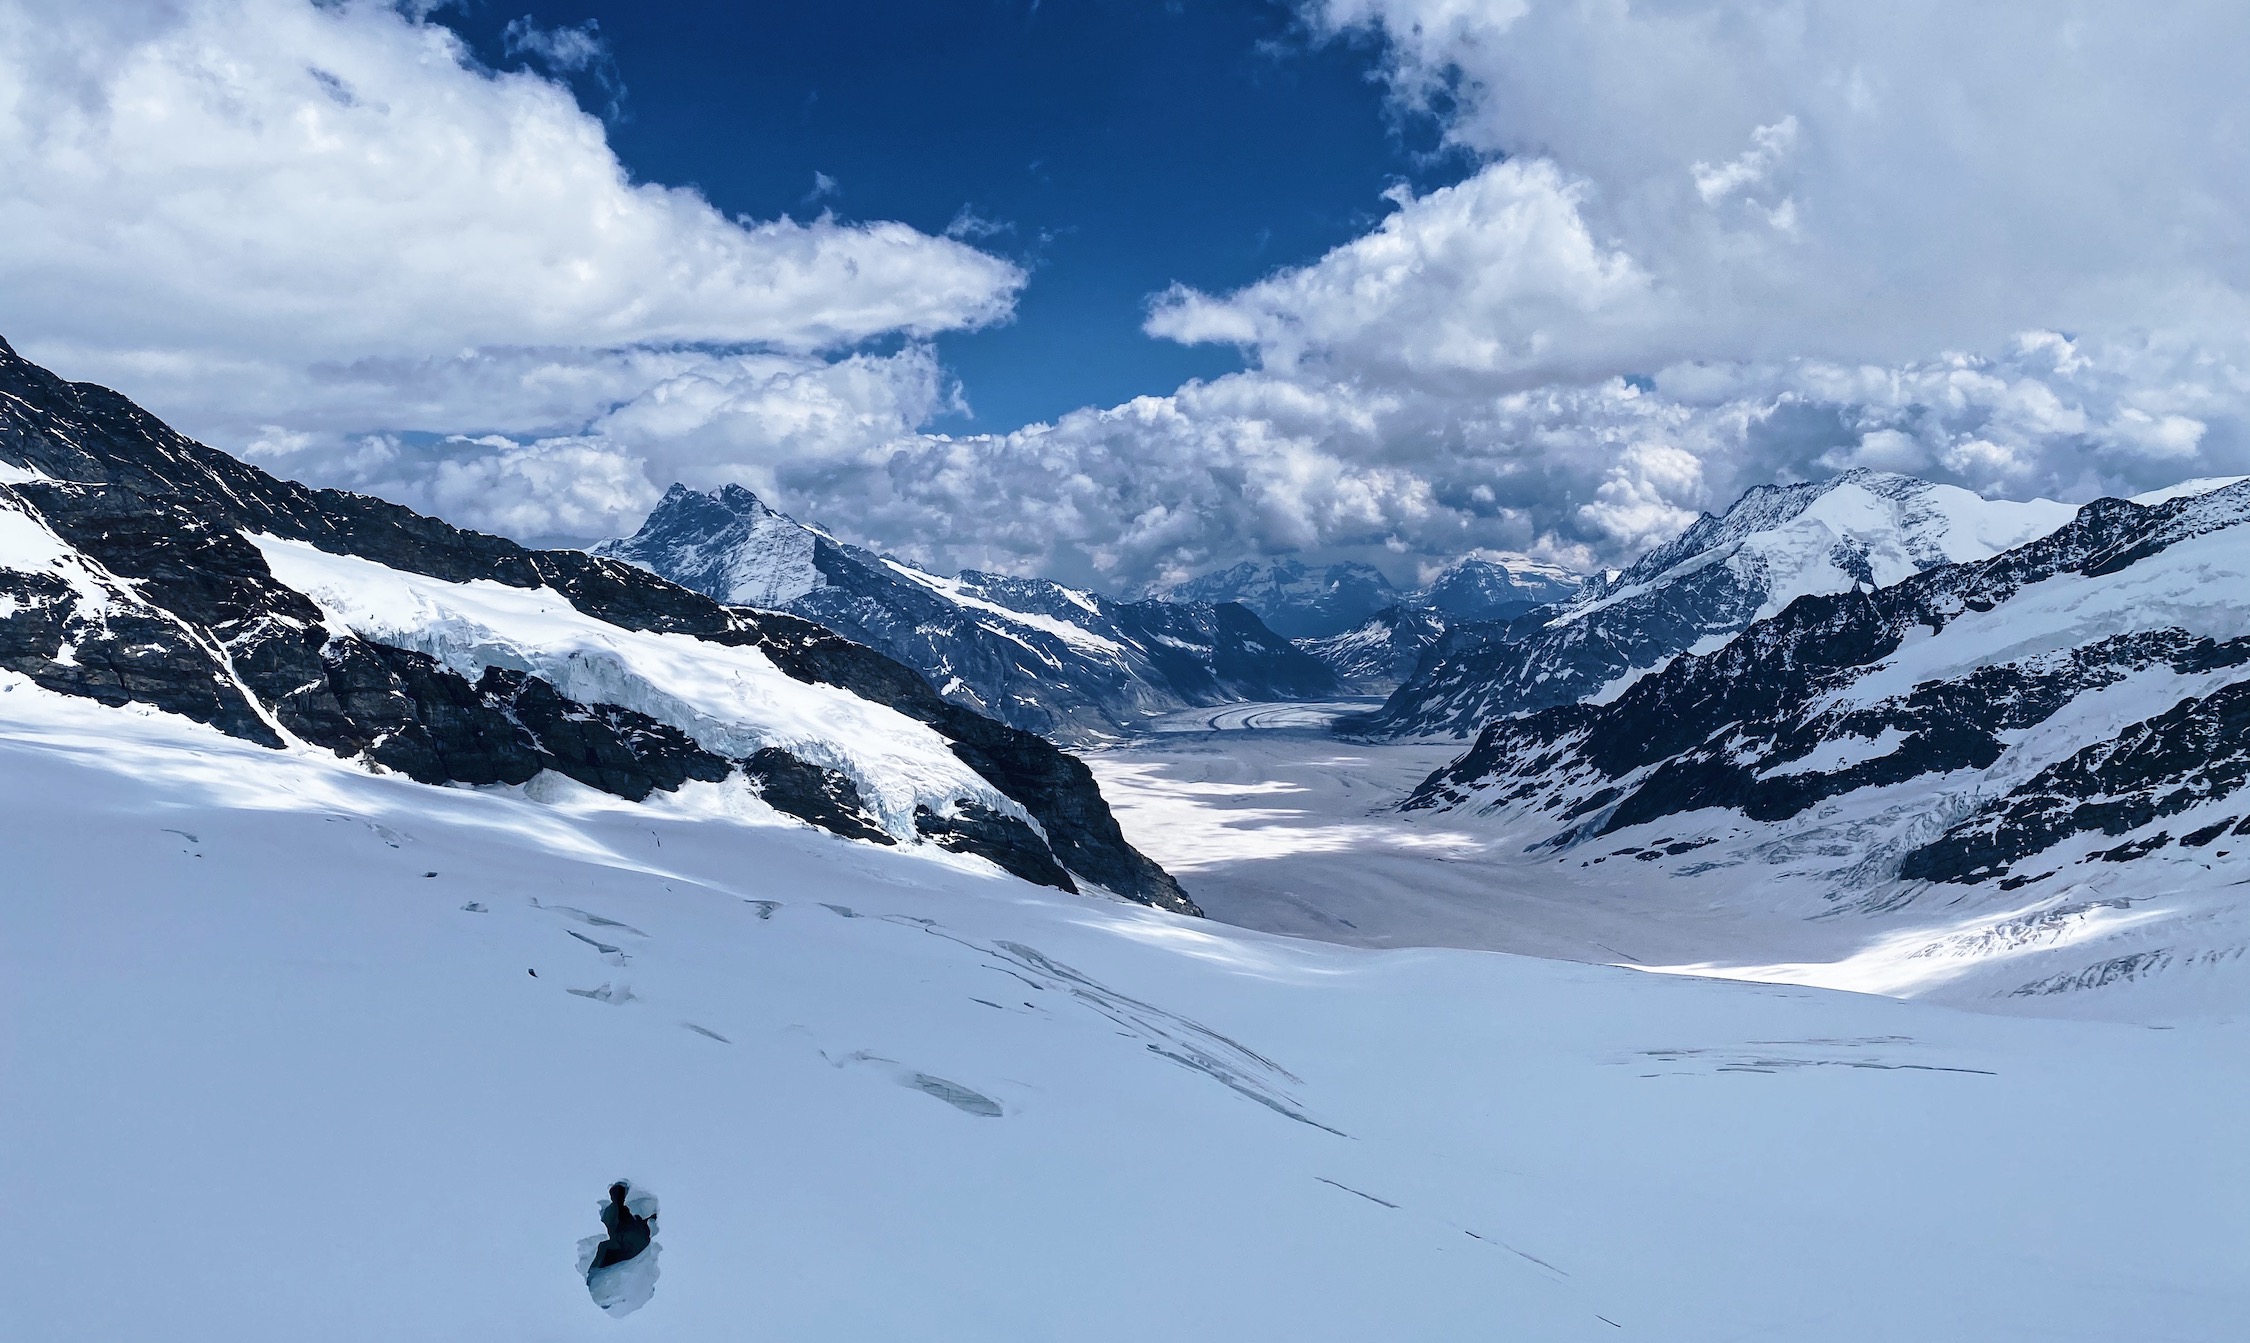 Jungfraujoch Travel Guide: A Breathtaking Swiss Alps Adventure